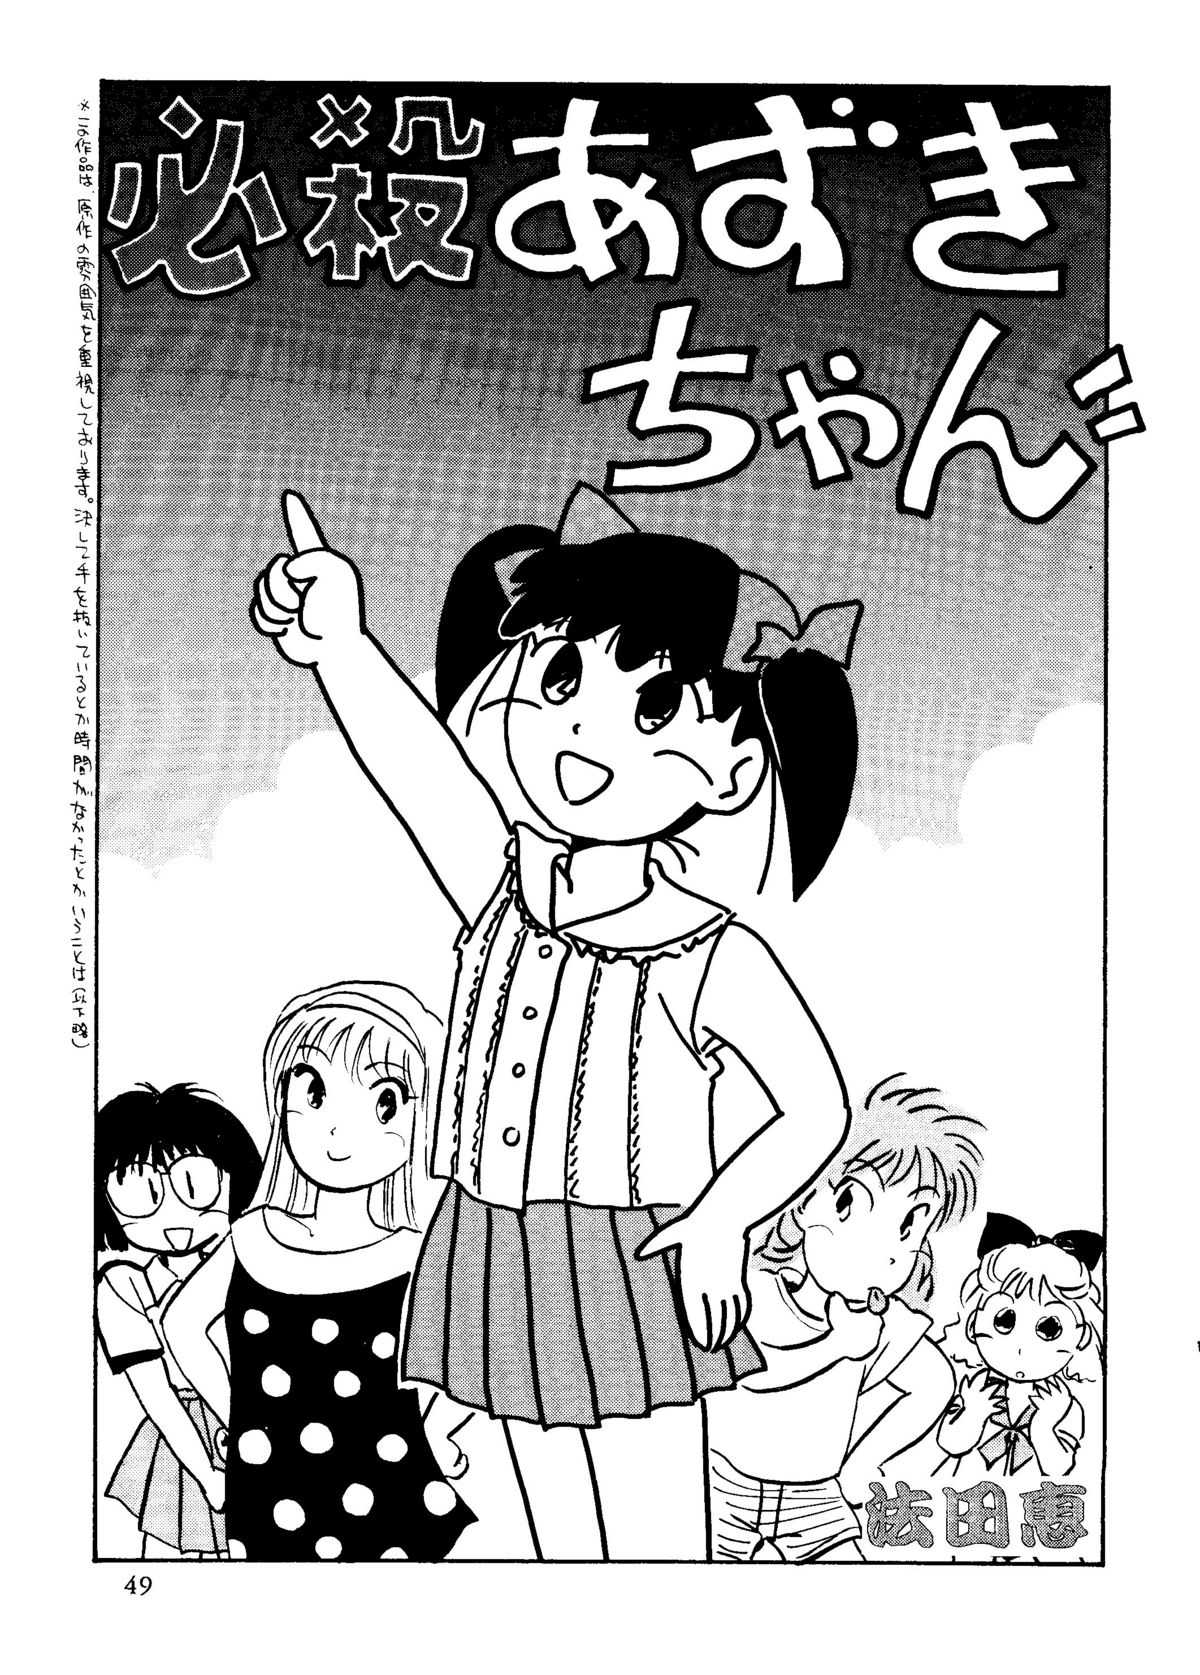 [R-Kids] R Kids ! Vol. 10 (Shazzan, Magic Knight Rayearth, Azuki-chan, Darkstalkers, Slayers) 